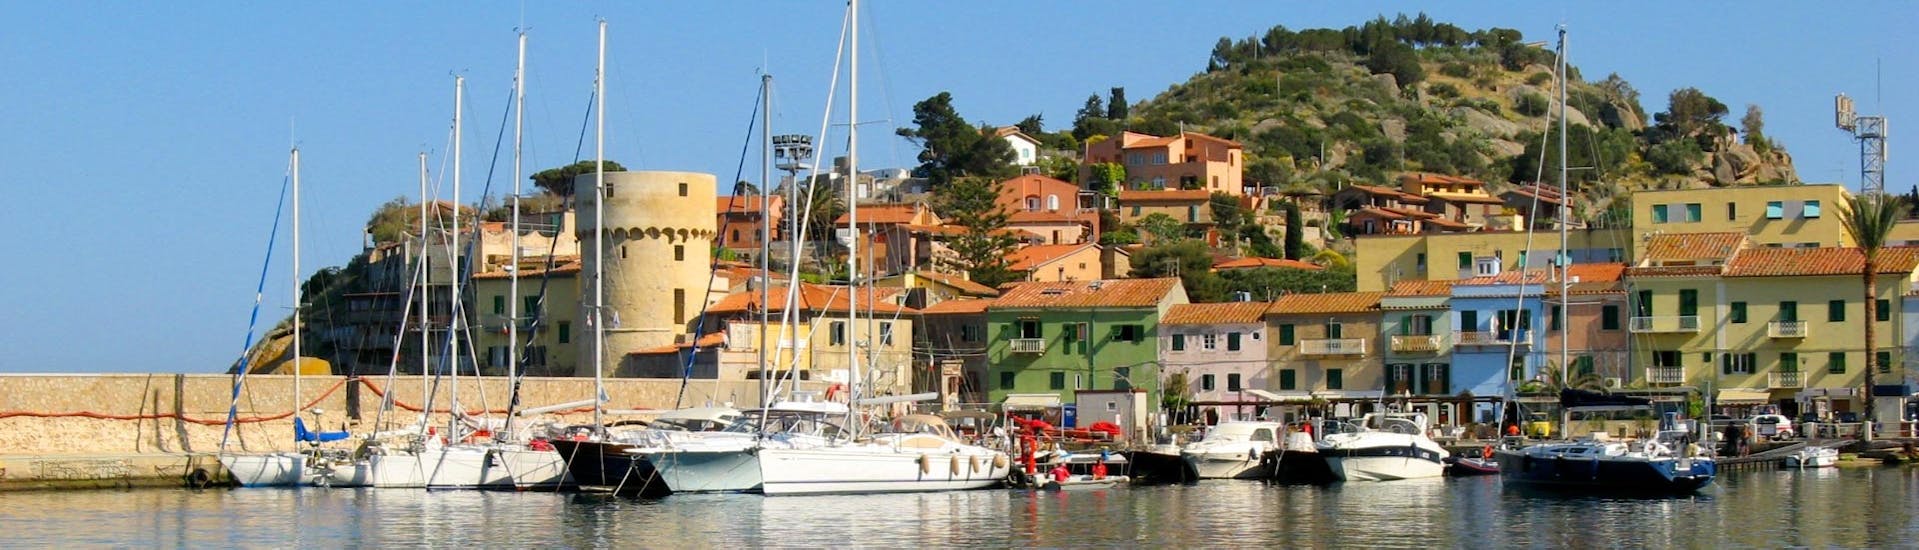 Uitzicht op de stad dicht bij de haven tijdens de dagtocht naar het eiland Giglio met Toscana Mini Crociere.